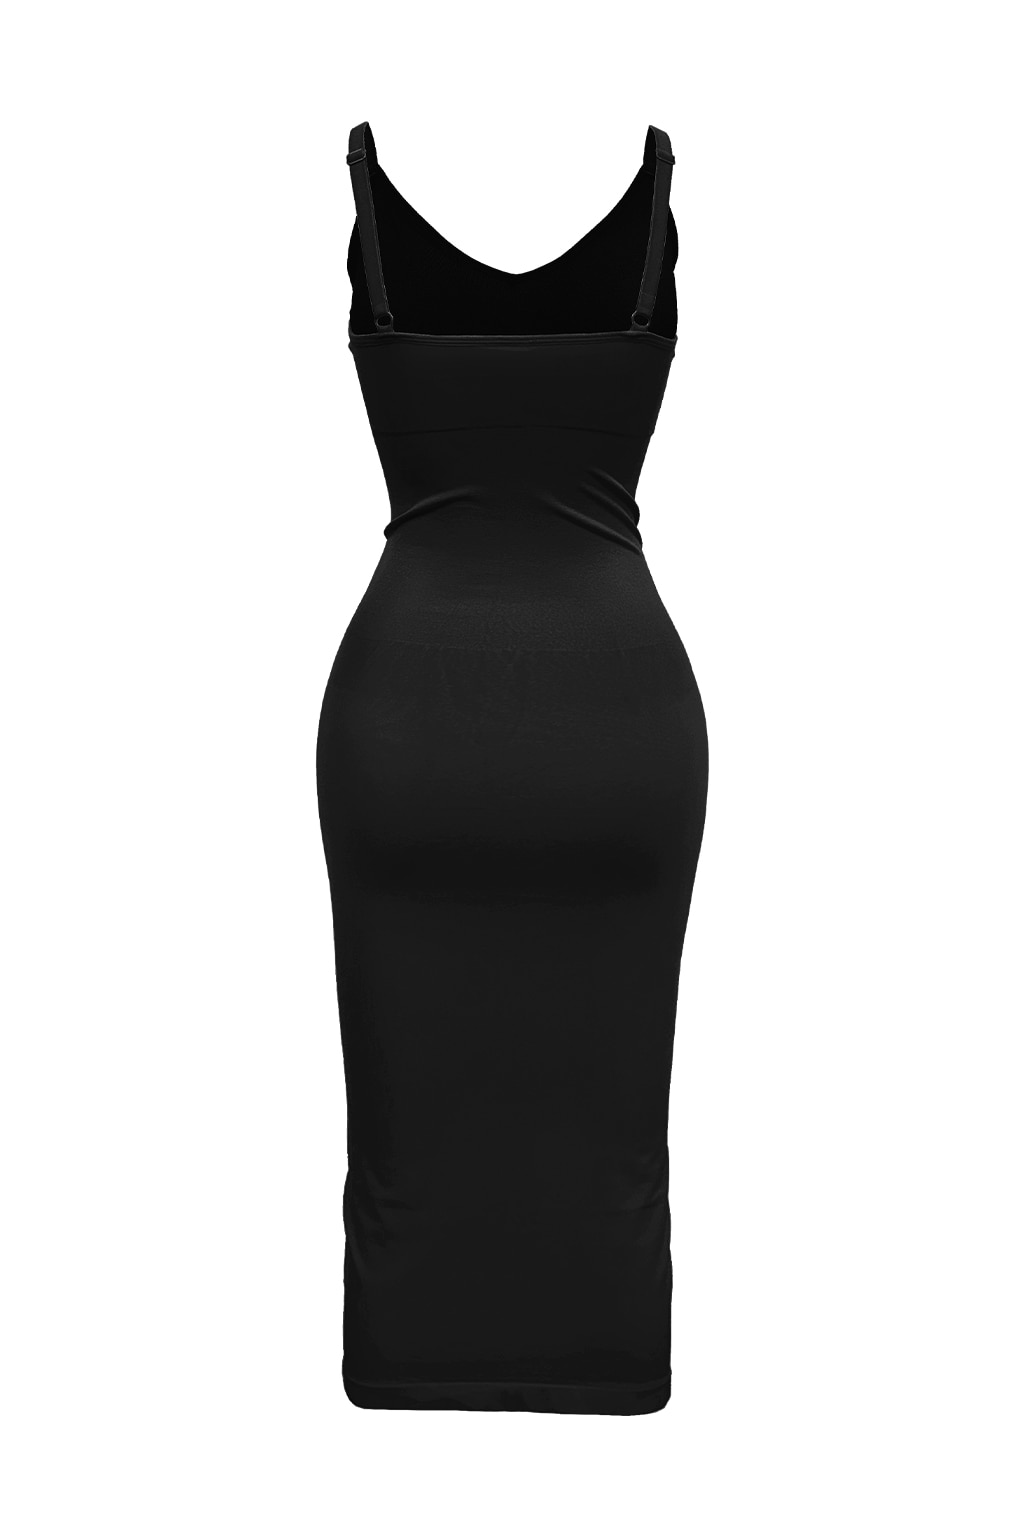 Mochi Glamour Deep V-Neck Dress Black